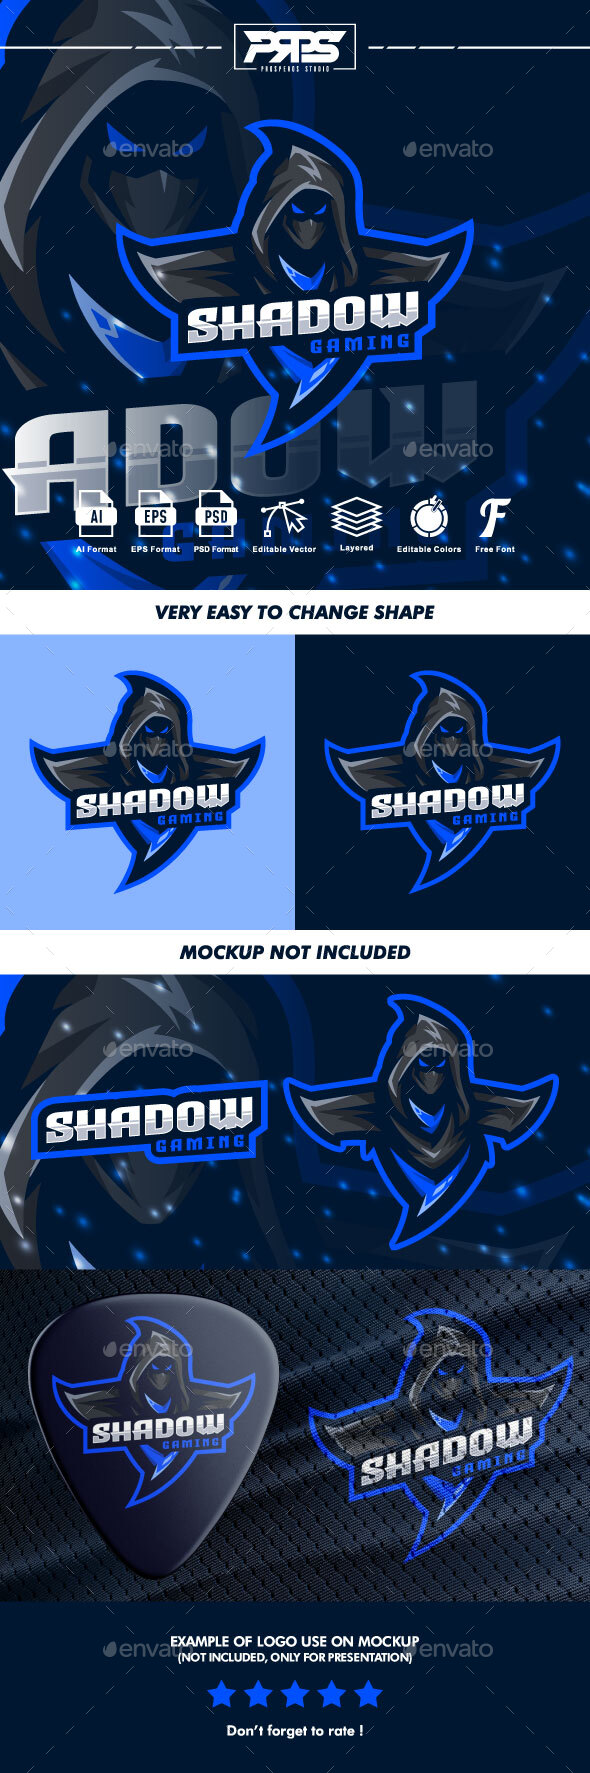 [DOWNLOAD]Shadow Esport Logo